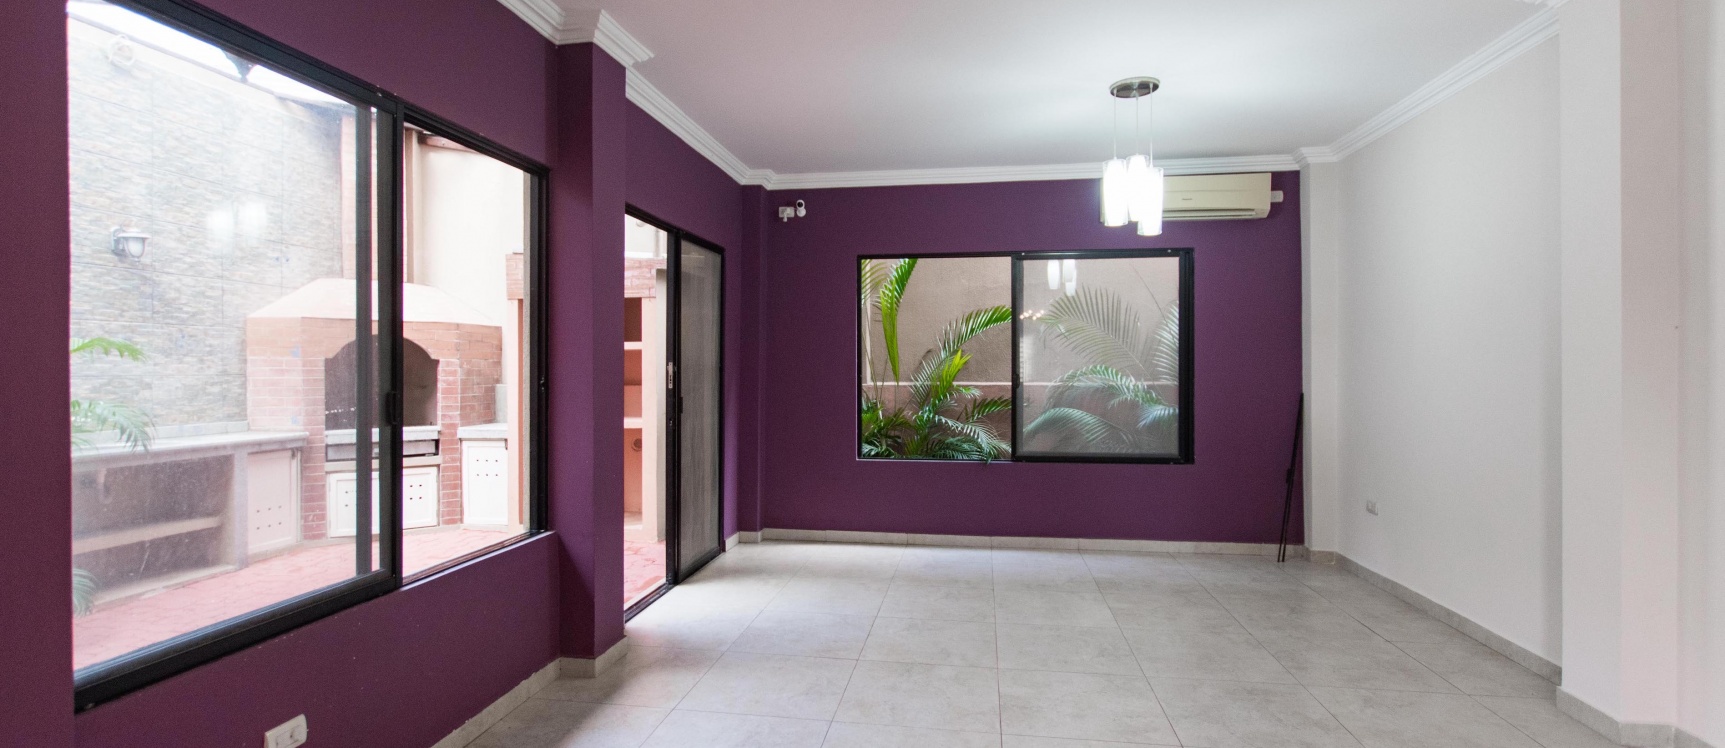 GeoBienes - Casa en alquiler ubicada en urbanización Plaza Madeira via Aurora, Samborondón - Plusvalia Guayaquil Casas de venta y alquiler Inmobiliaria Ecuador